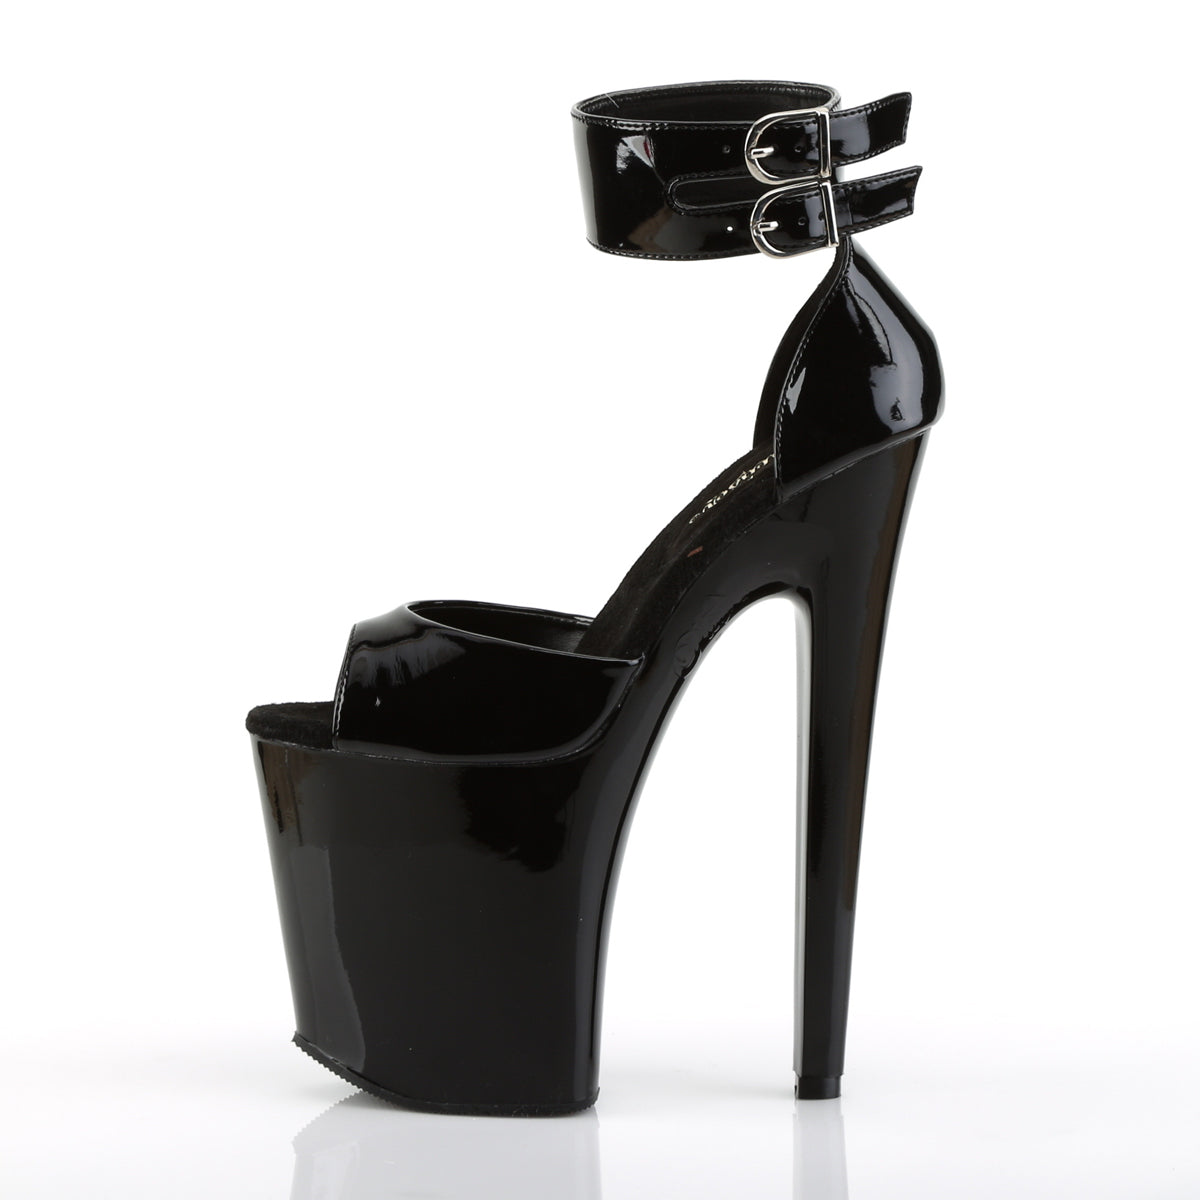 XTREME-875 Pleaser Black Patent Platform Shoes [Exotic Dancing Shoes]